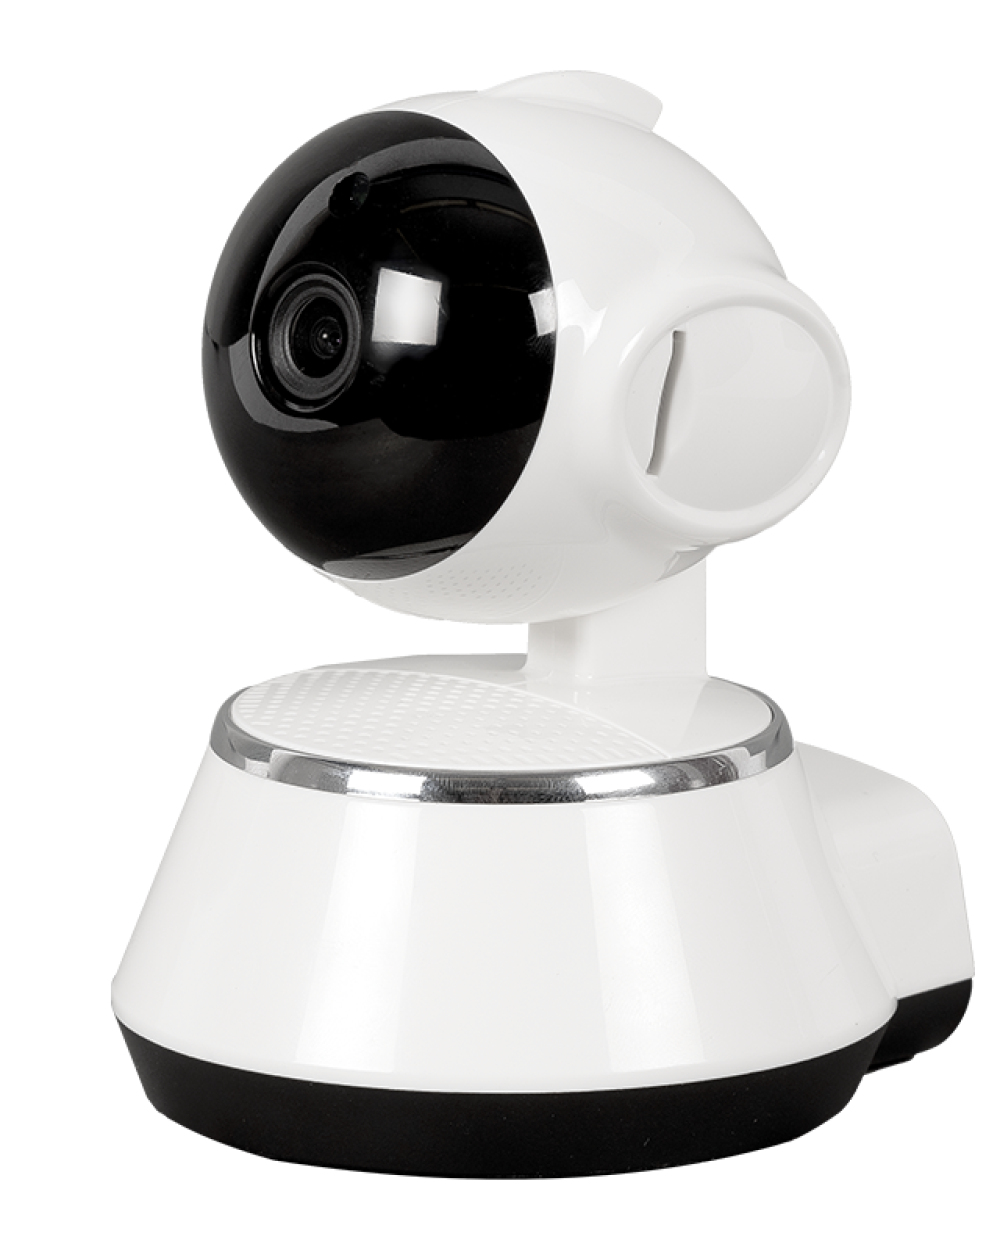 WIFI-s beltéri biztonsági okoskamera mozgásérzékelővel, élő kameraképpel – hangszóróval, mikrofonnal (W380) (BBV) (2)